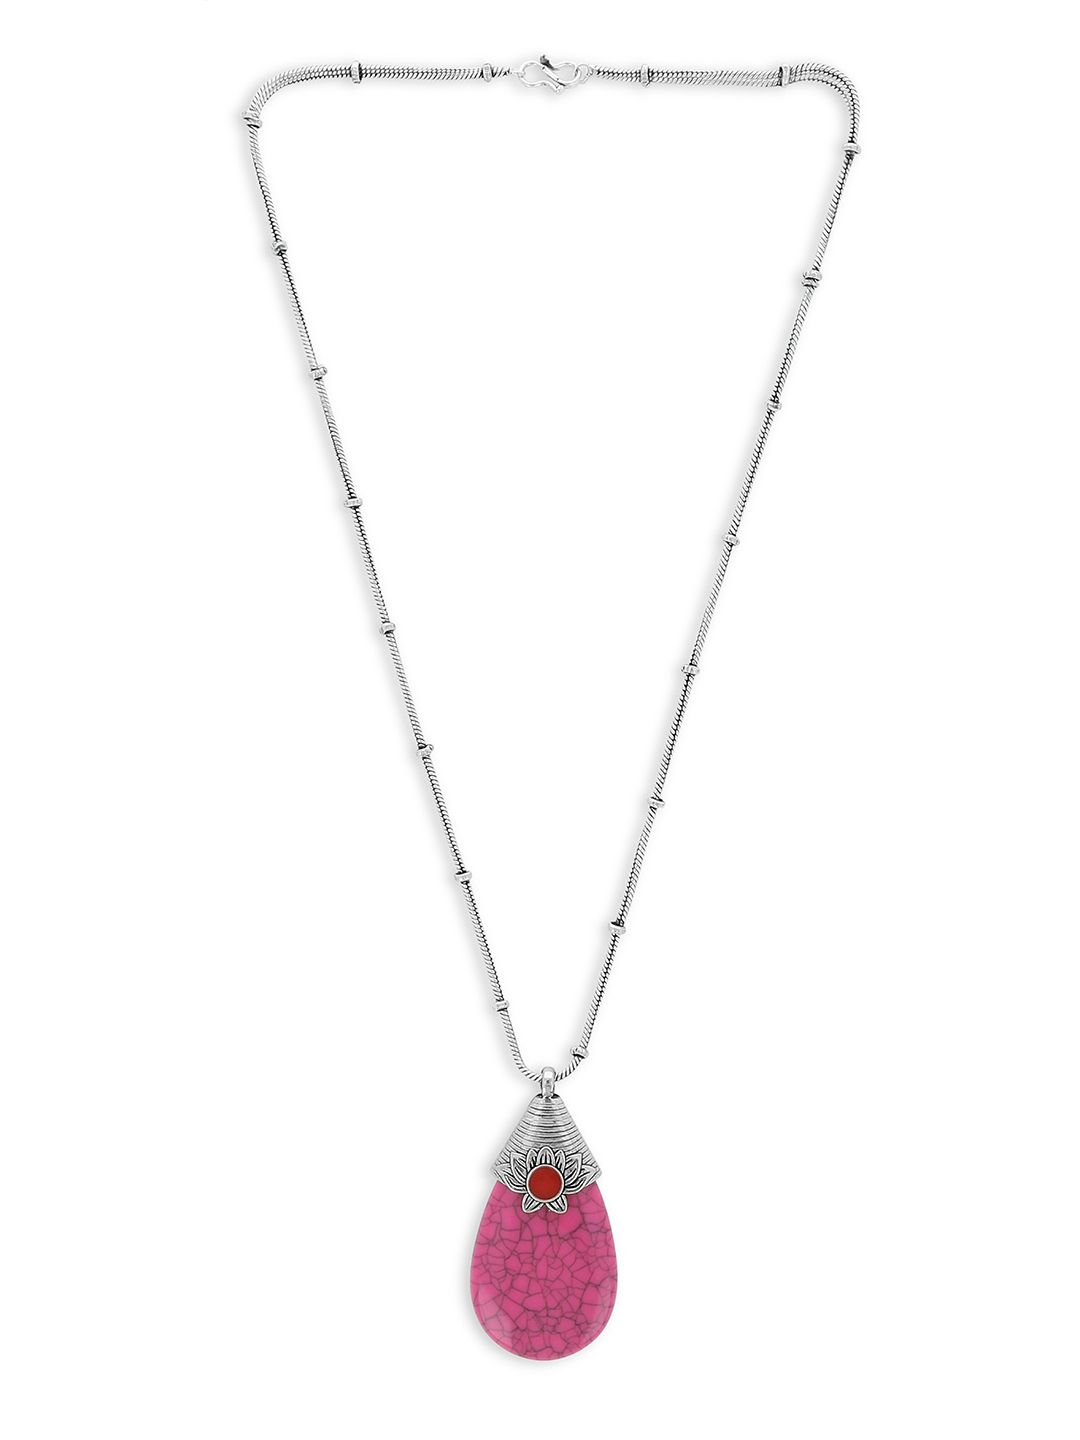 EL REGALO Pink & Silver-Toned Necklace Price in India